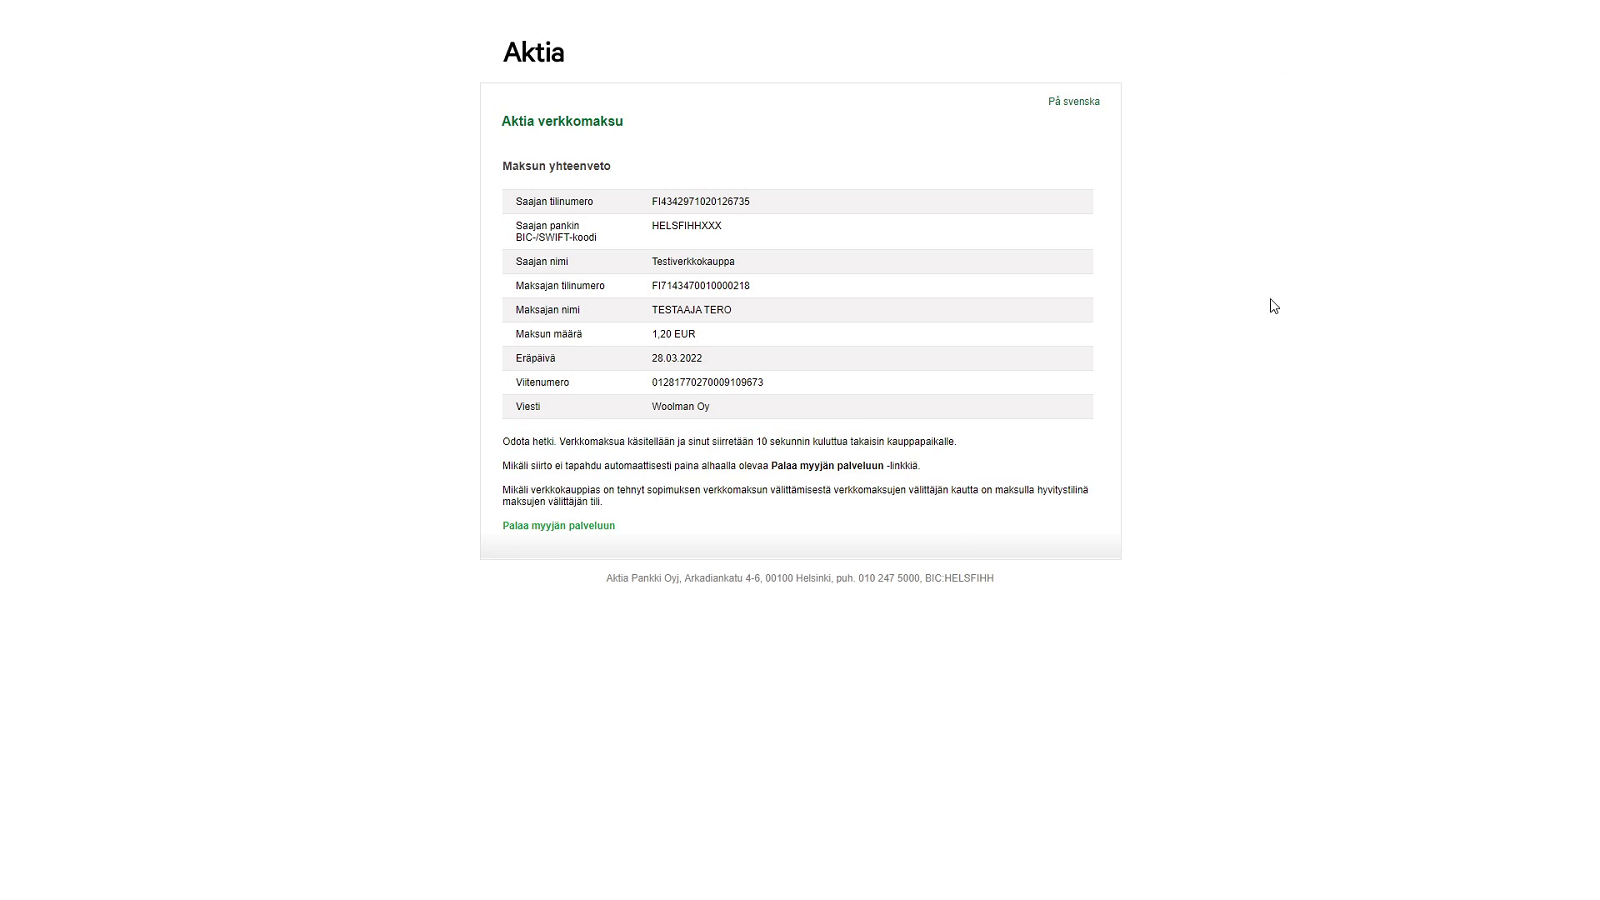 Aktia payment step 2